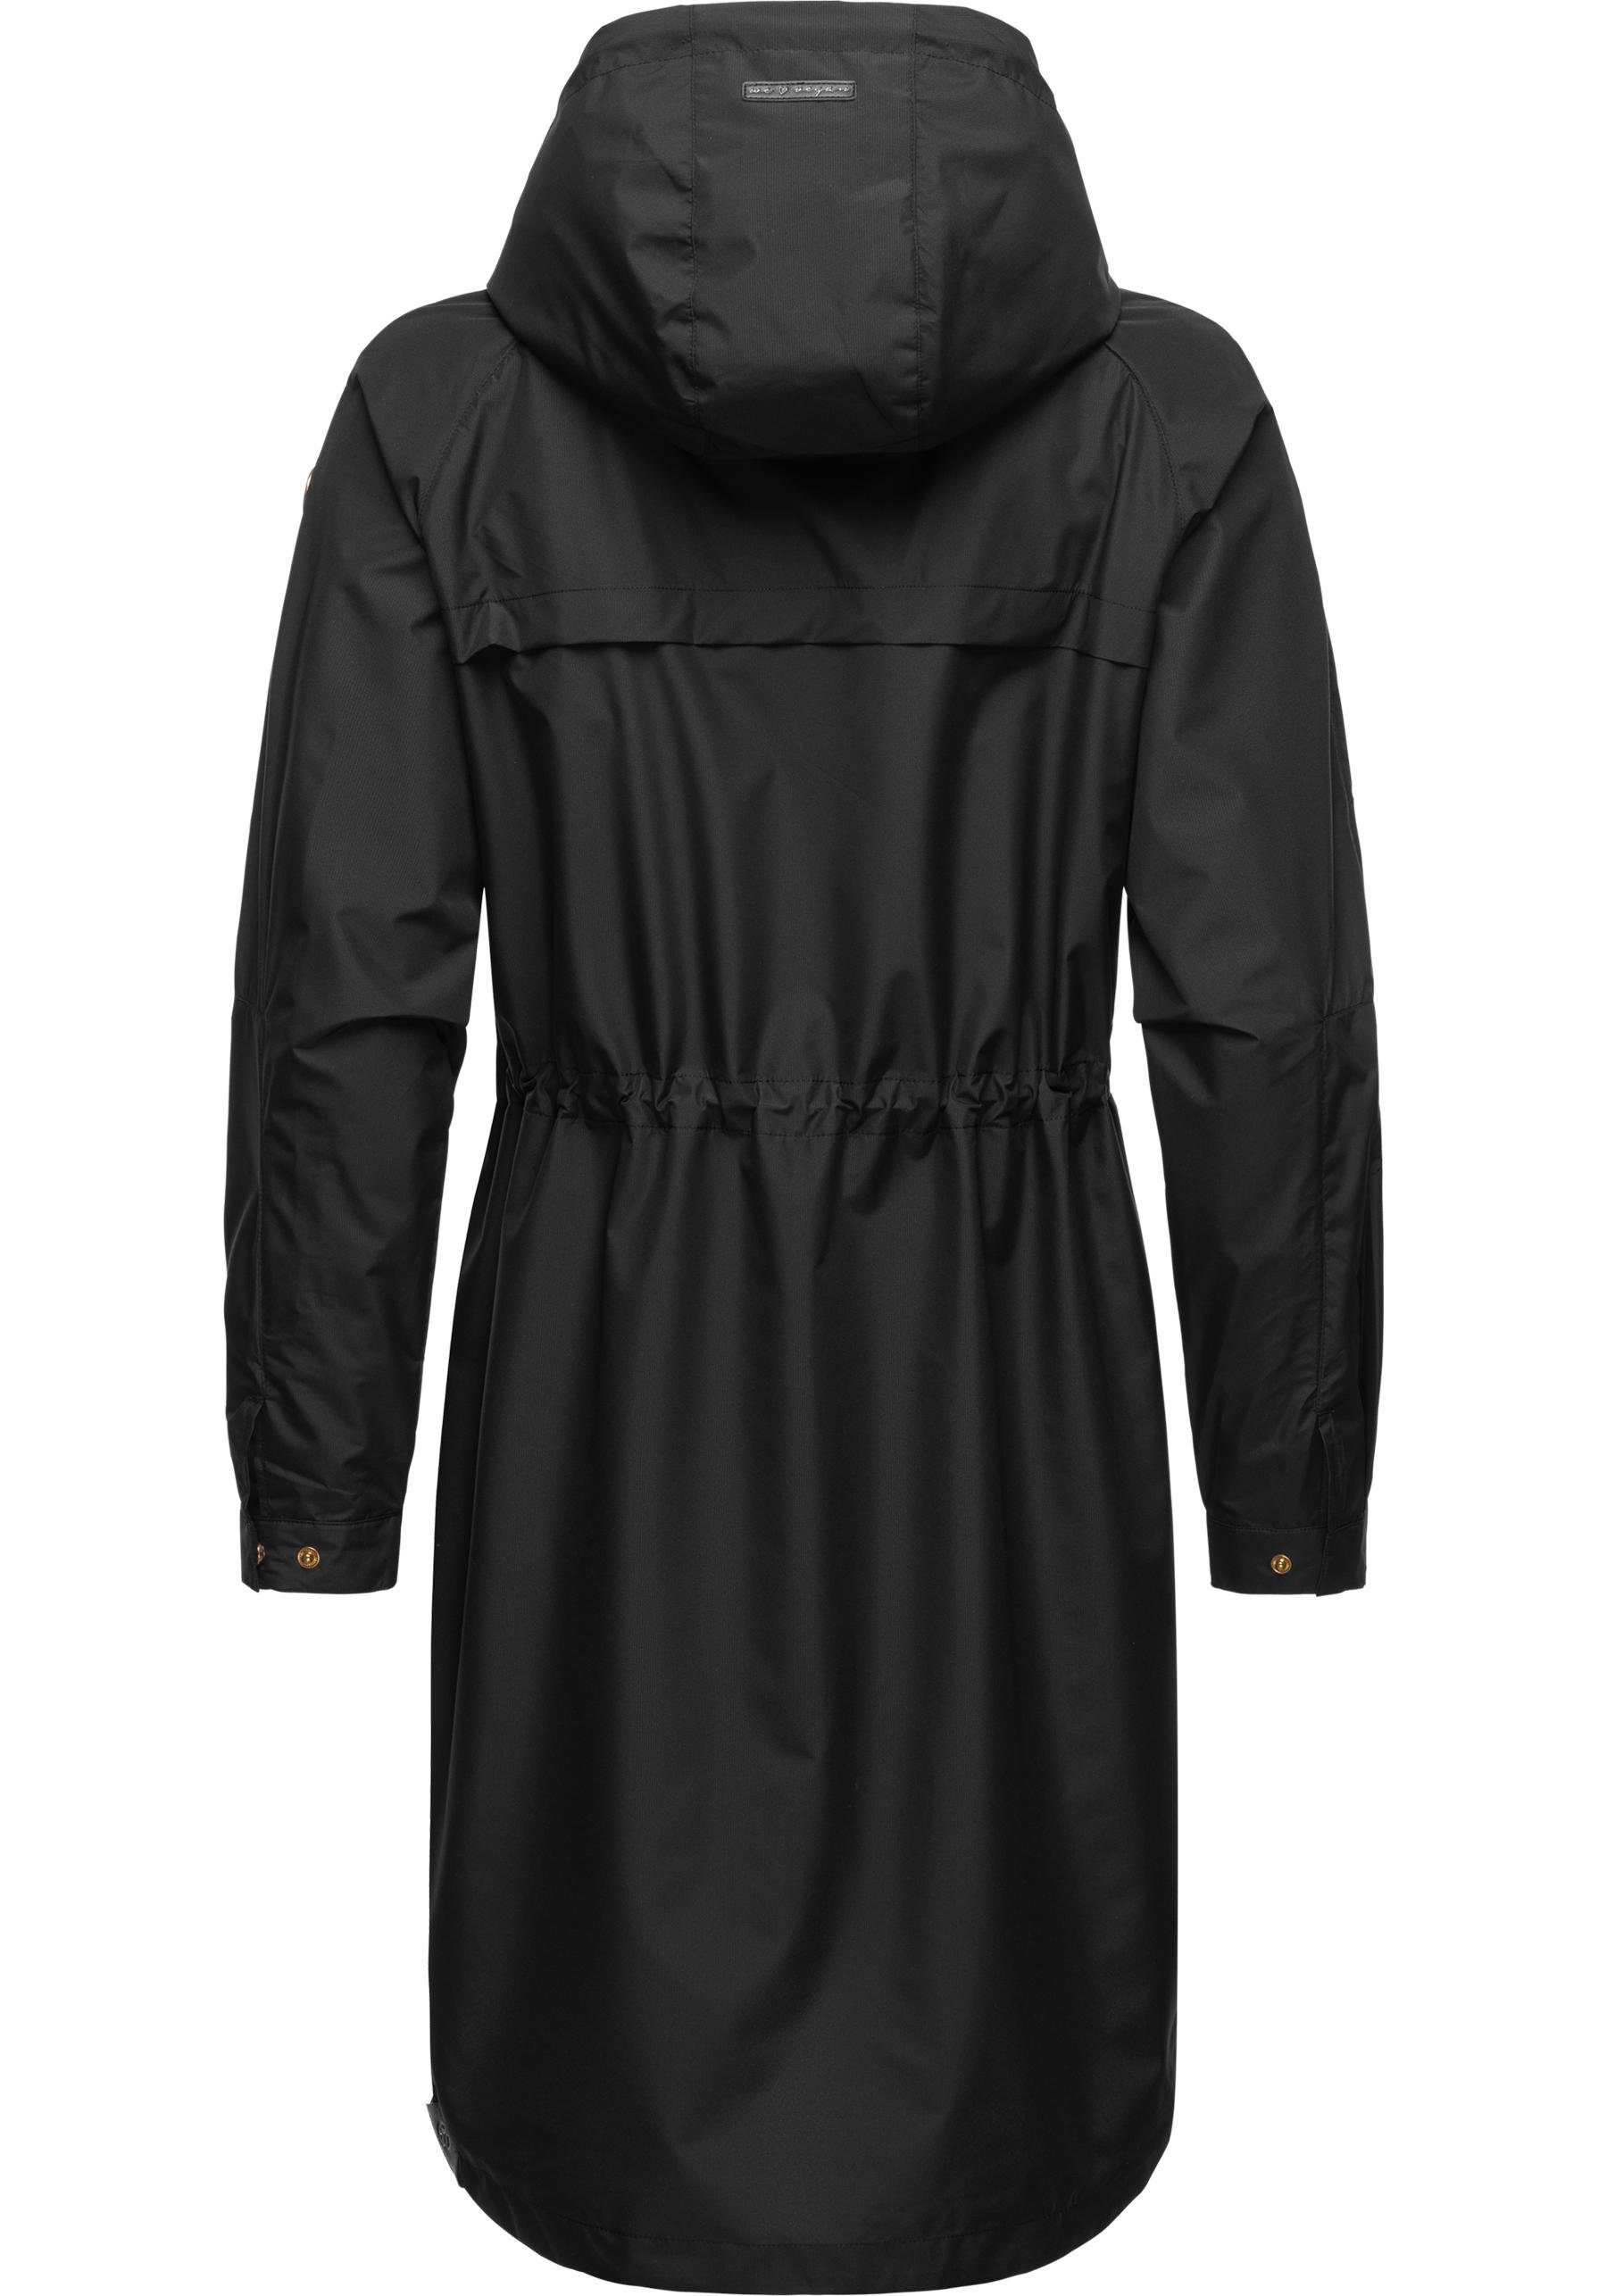 Belinka sehr und Übergangsjacke leichte schwarz stylische lange Ragwear Outdoorjacke